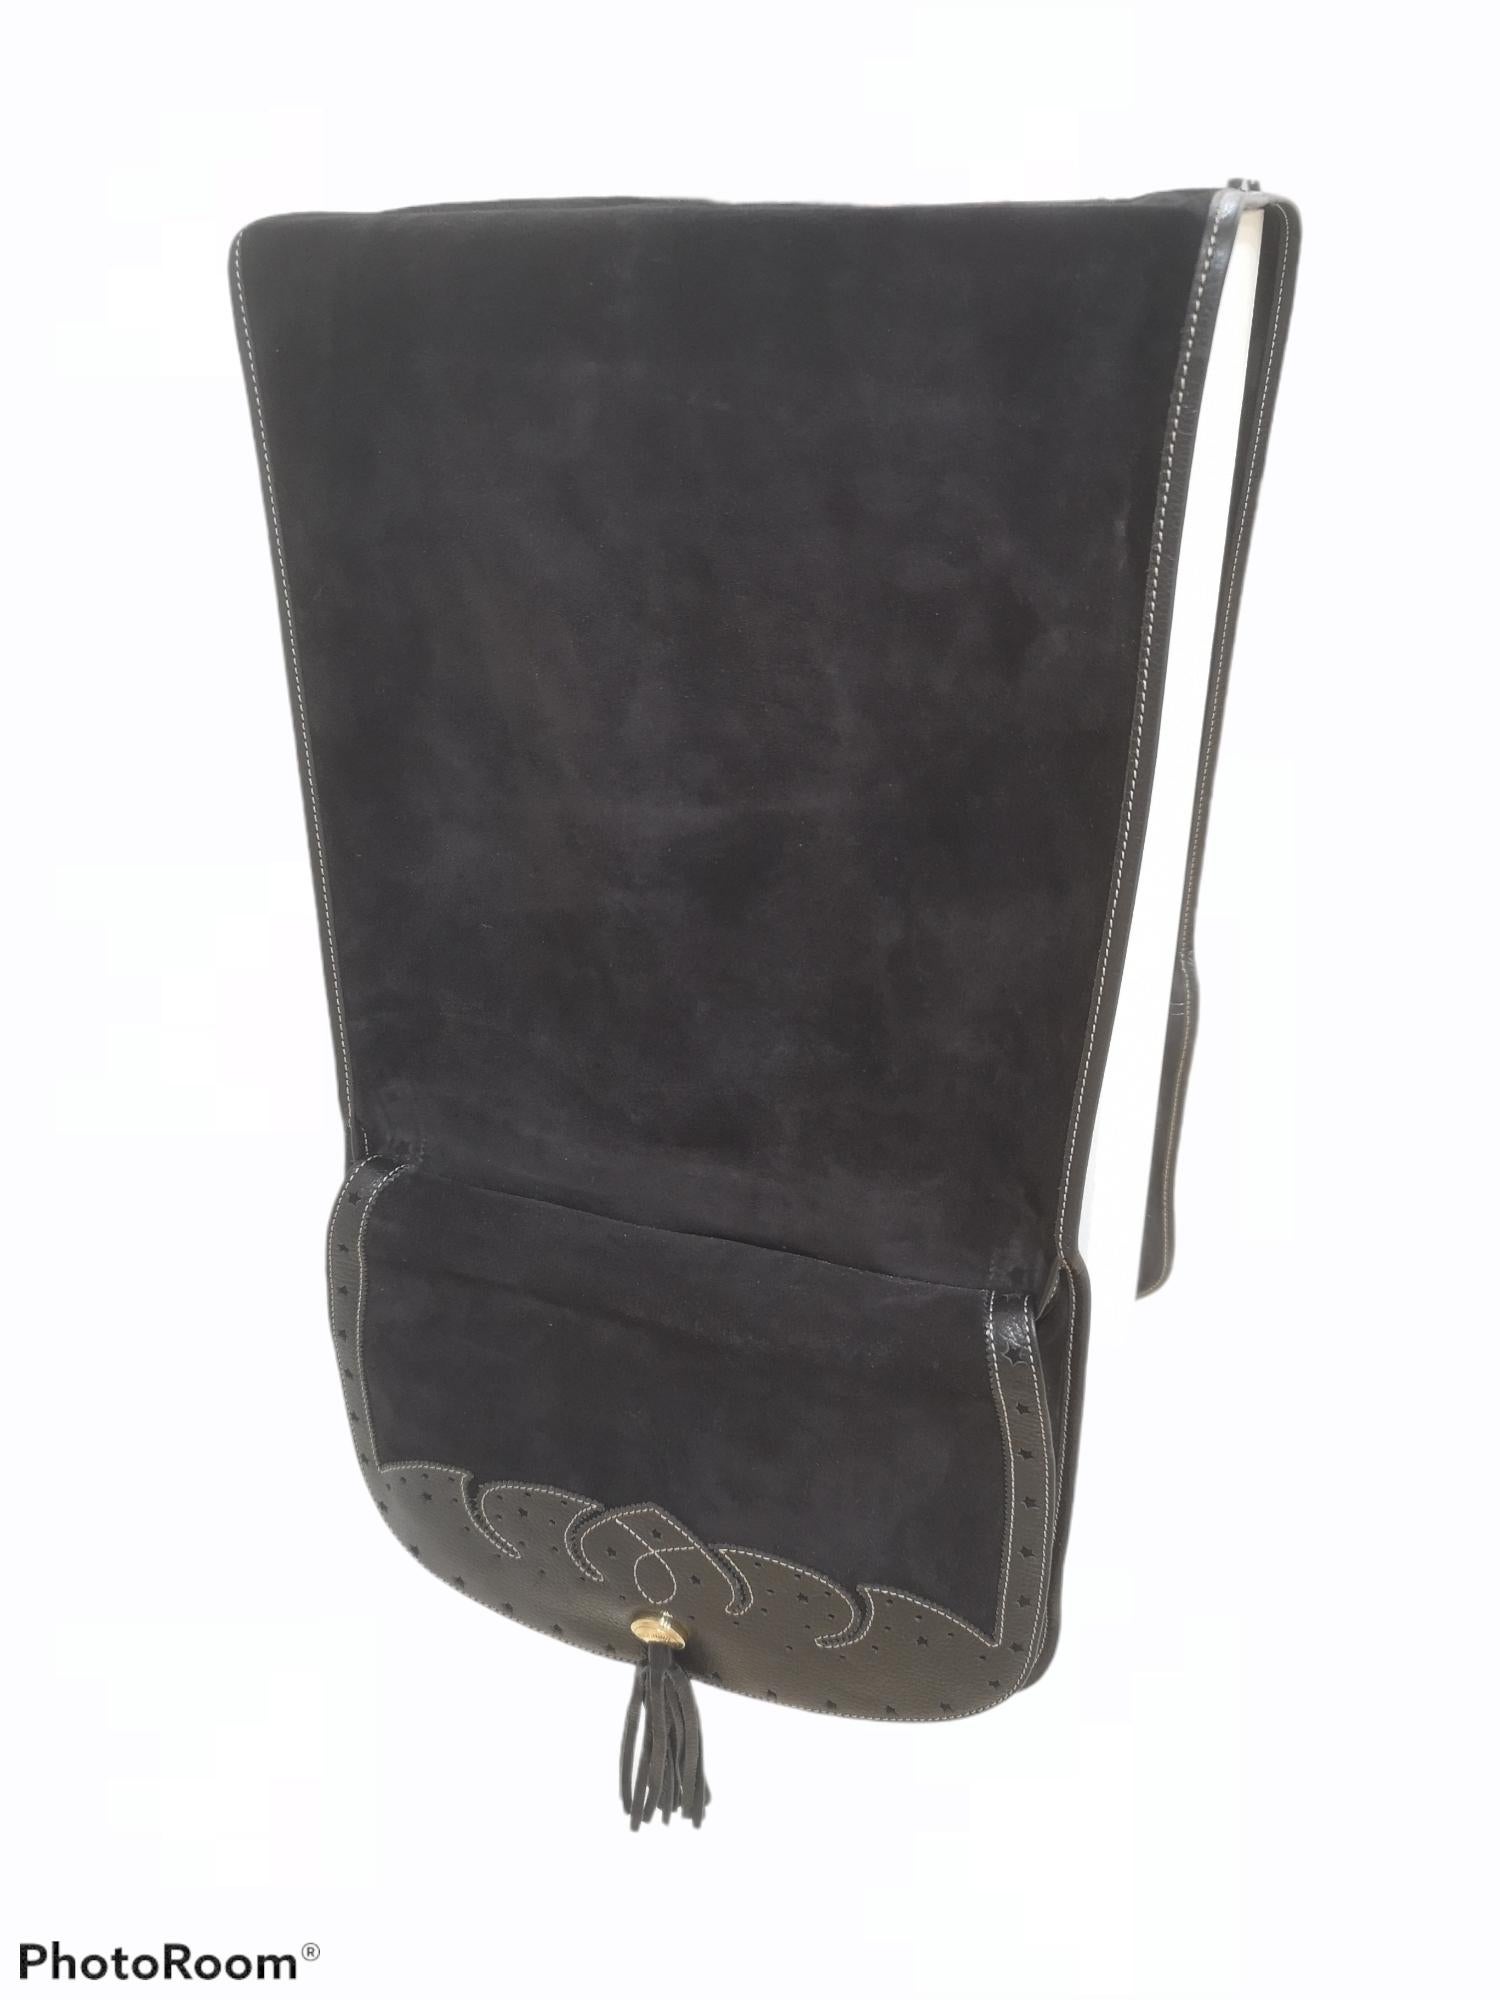 Moschino Gaucho-Tasche aus schwarzem Wildleder 
Moschino Vintage Tasche, Sattel Inspiration
vollständig in Italien hergestellt
gesamtlänge 145 cm x 30 cm 
aufgaben auf beiden Seiten